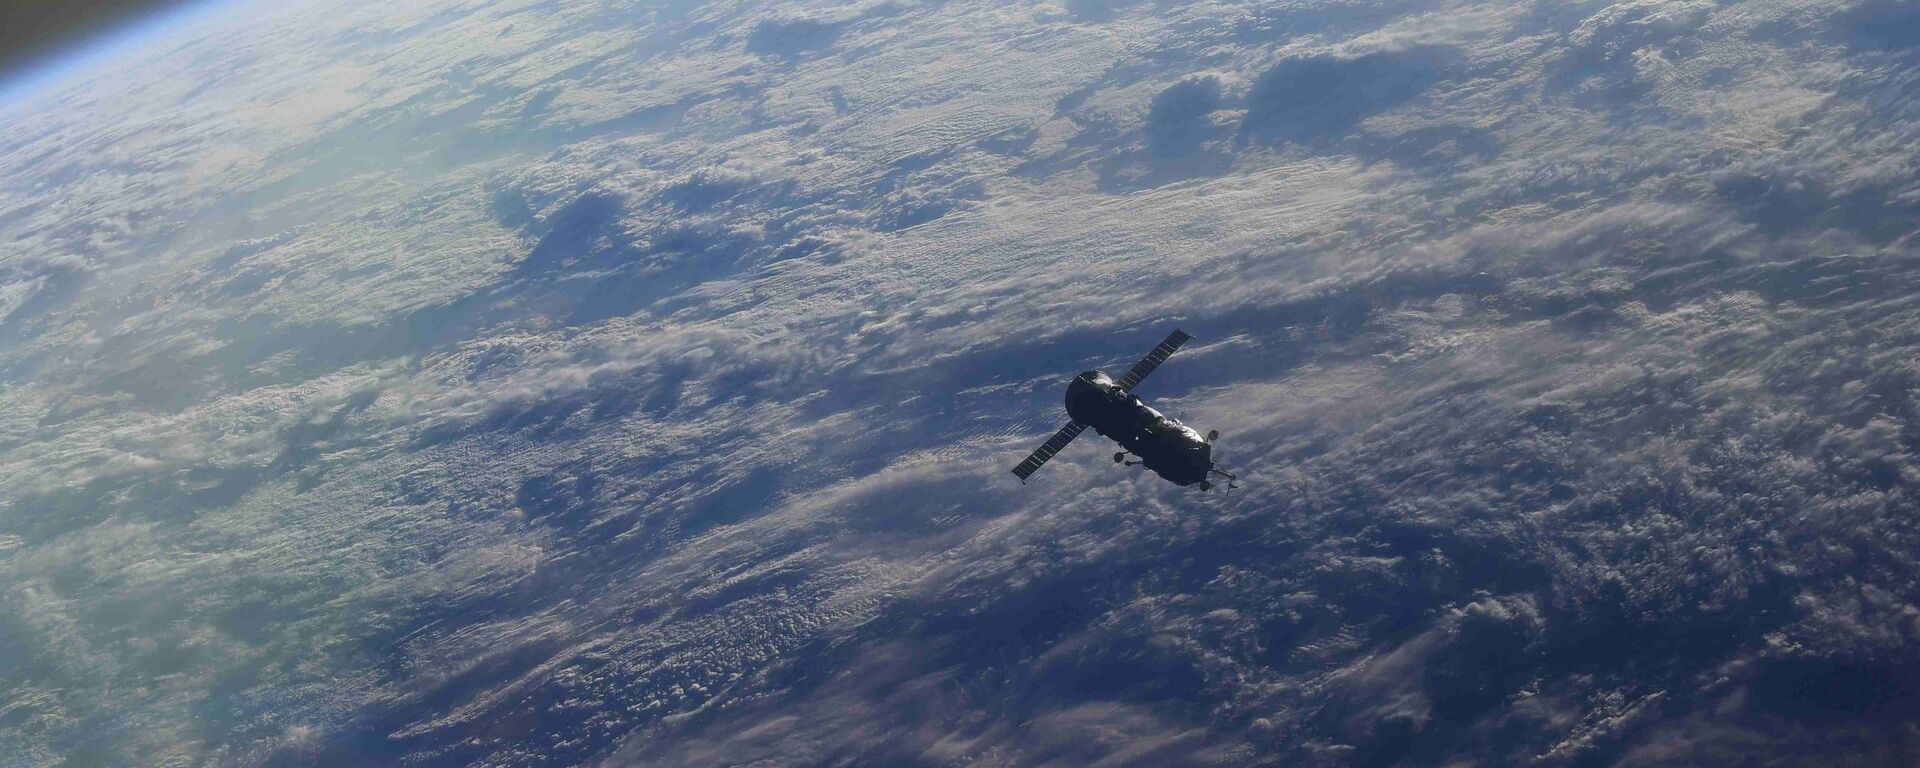 Модуль Пирс отстыковался от МКС - Sputnik Абхазия, 1920, 12.10.2021